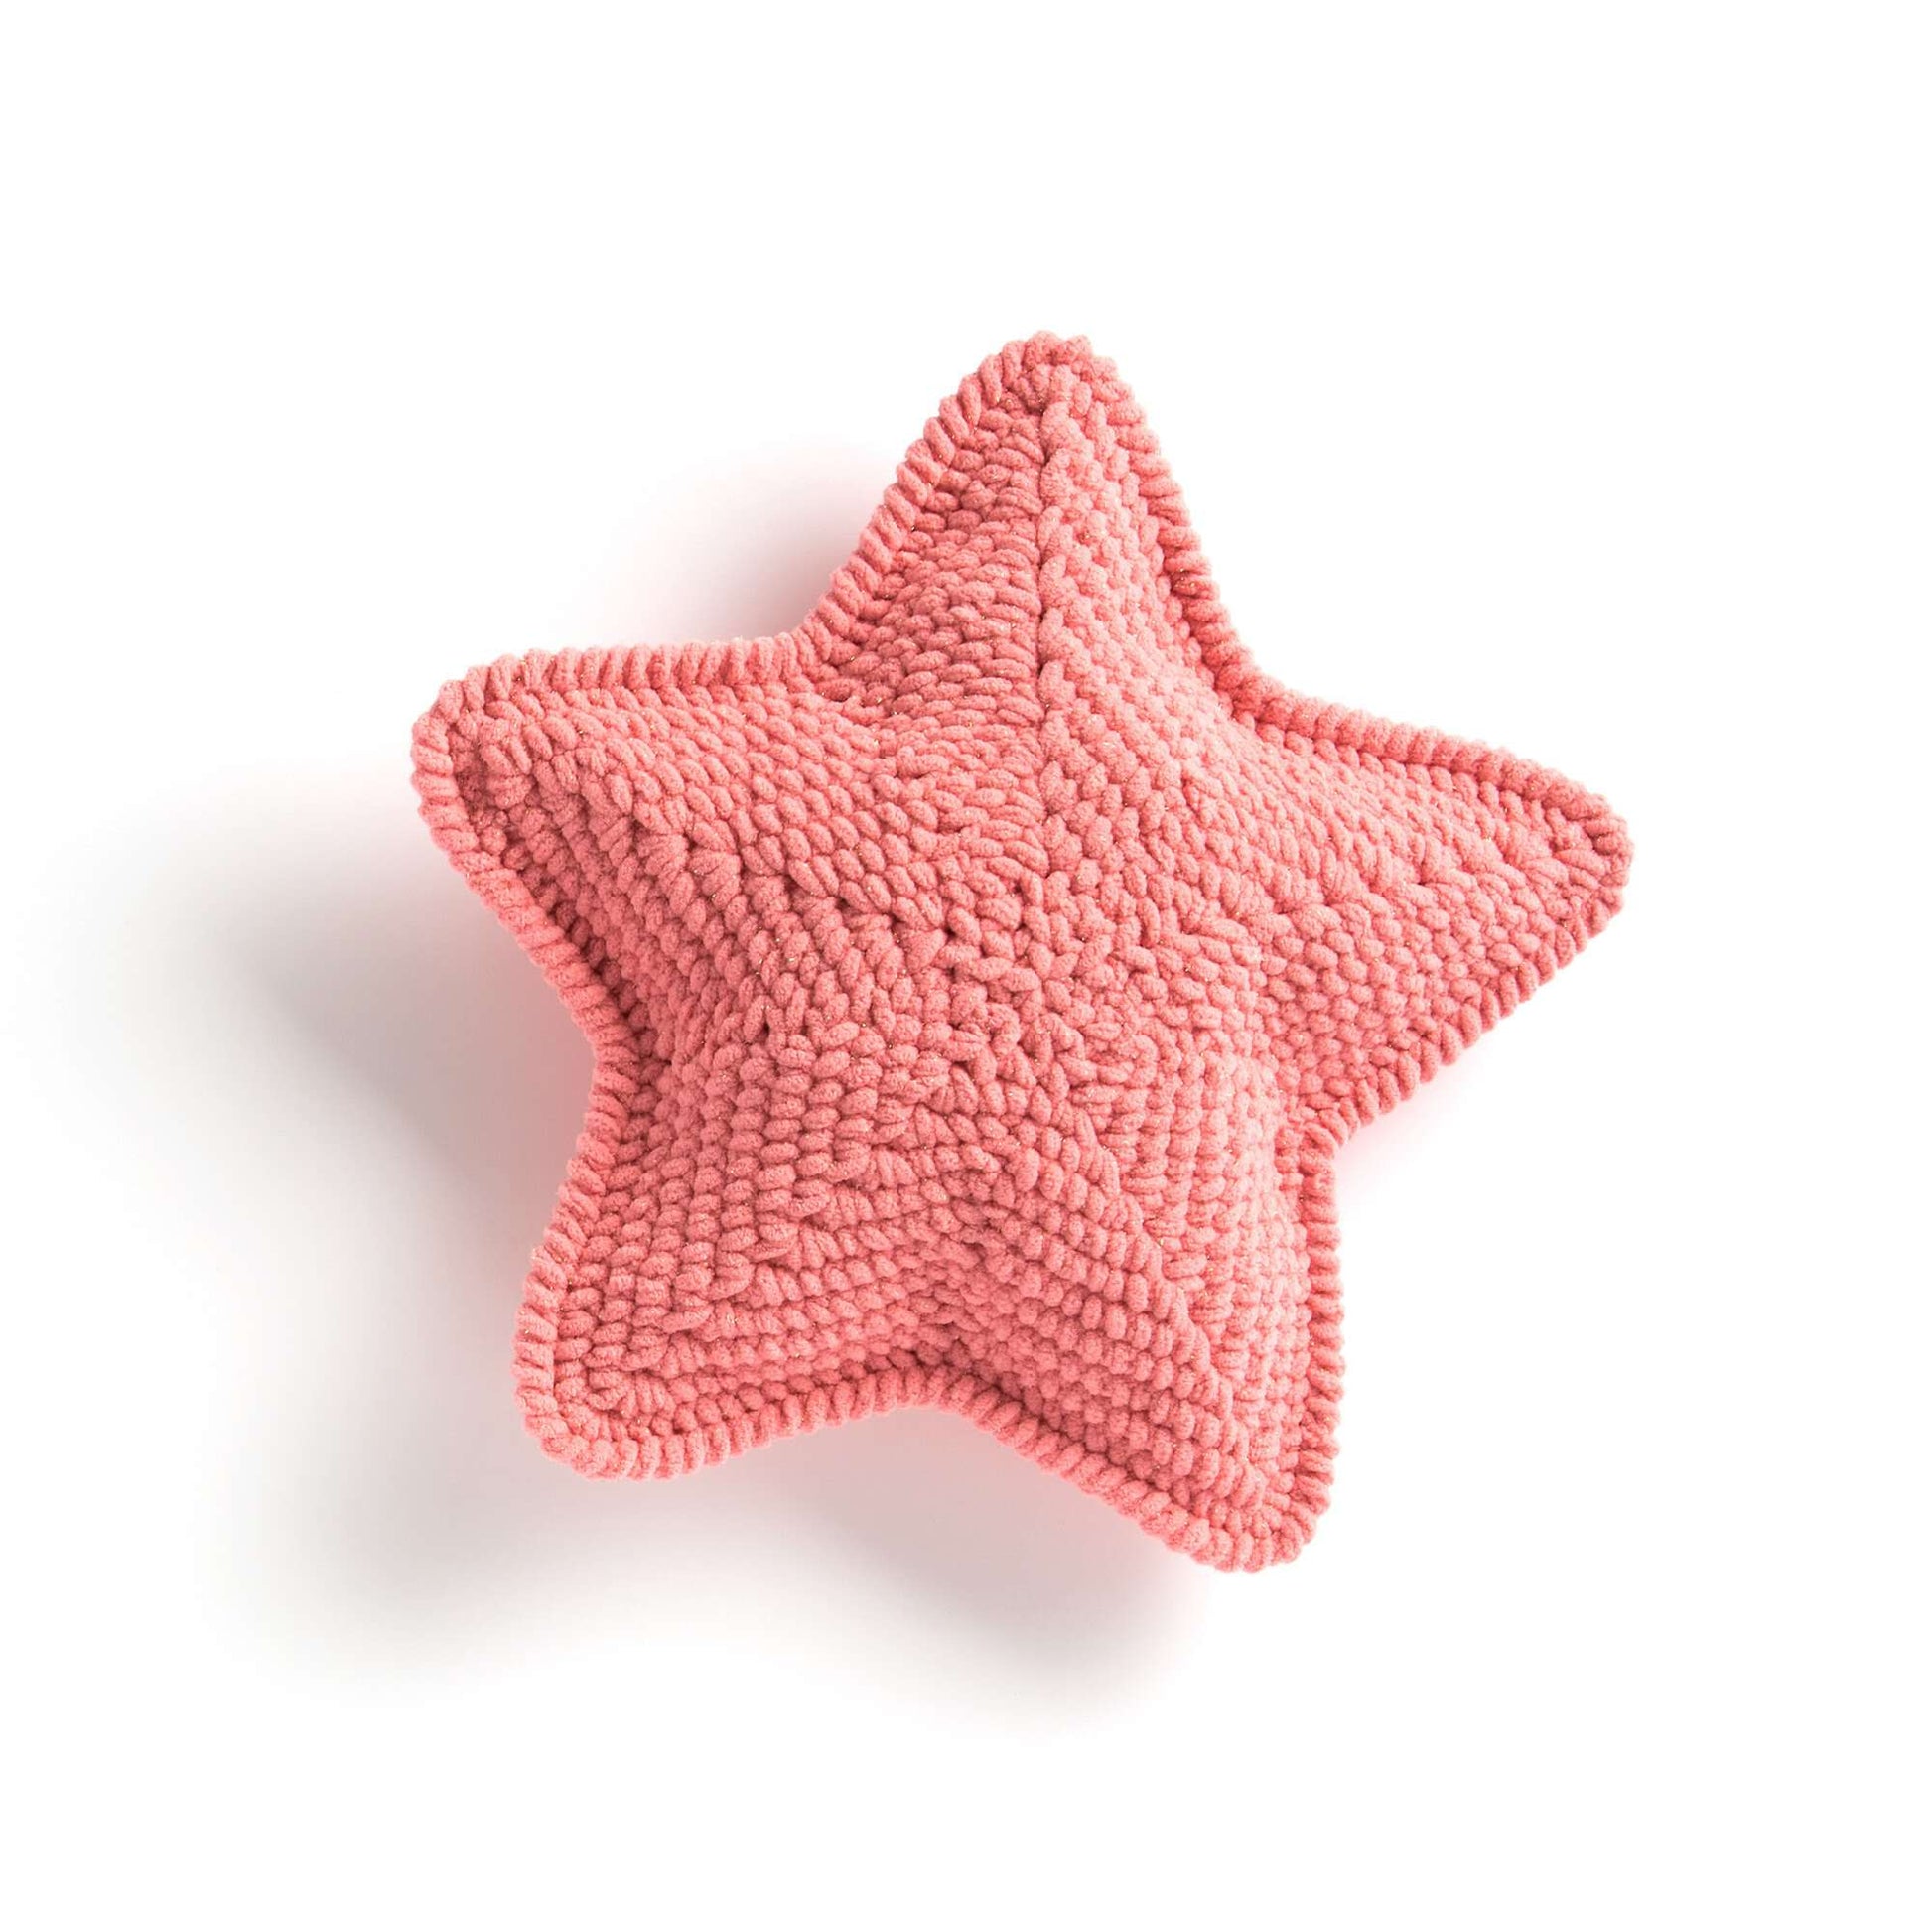 Free Bernat Crochet Lucky Star Pillow Pattern